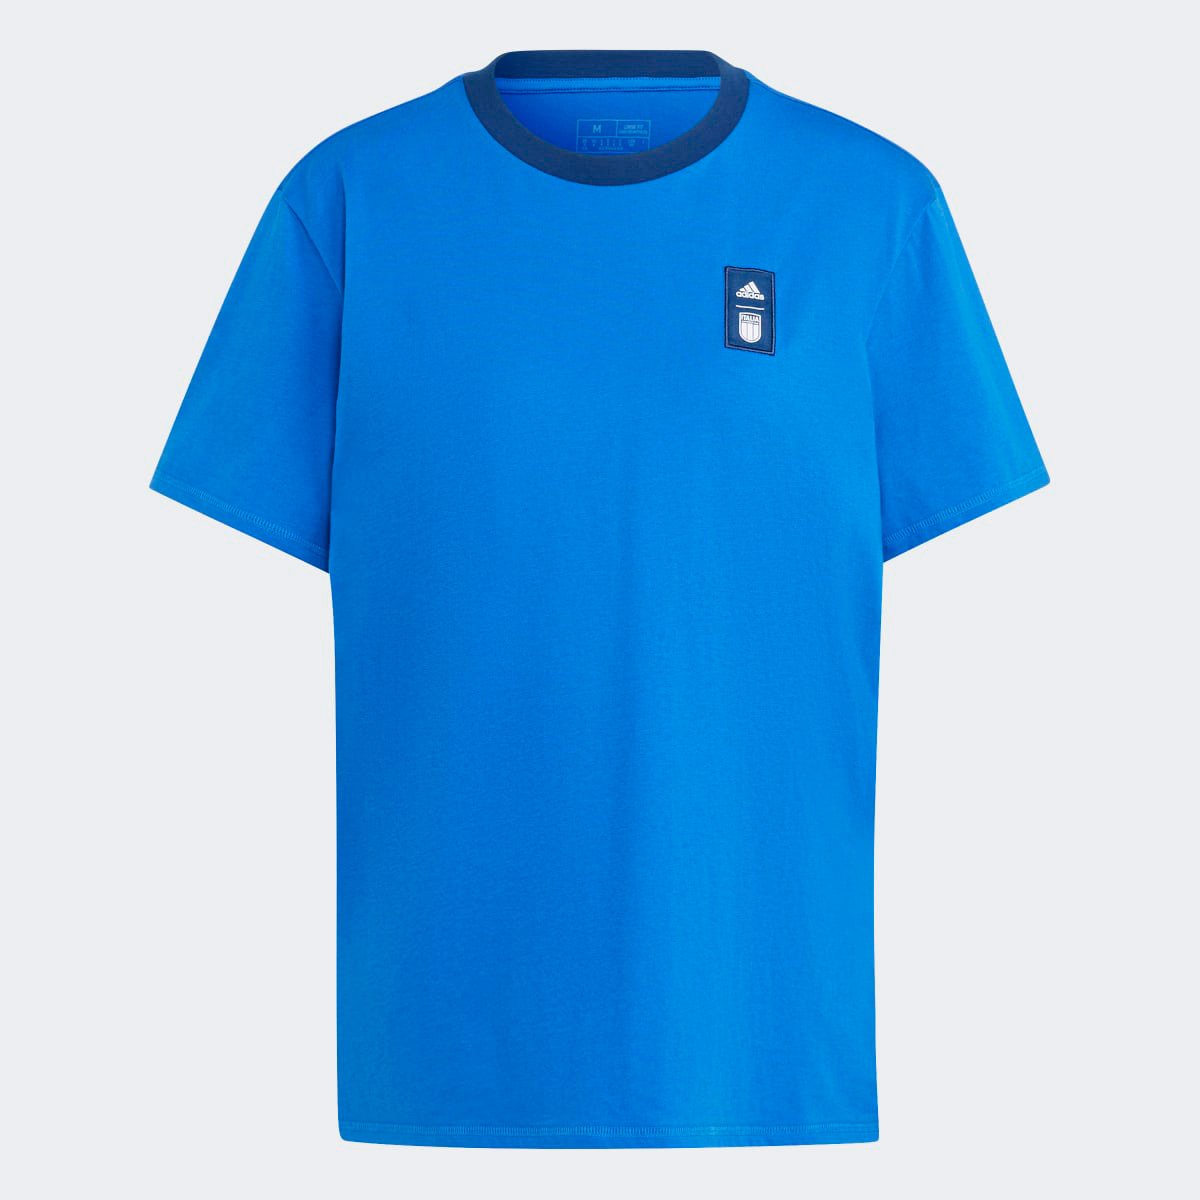 Camiseta Seleção Itália Adidas Feminina